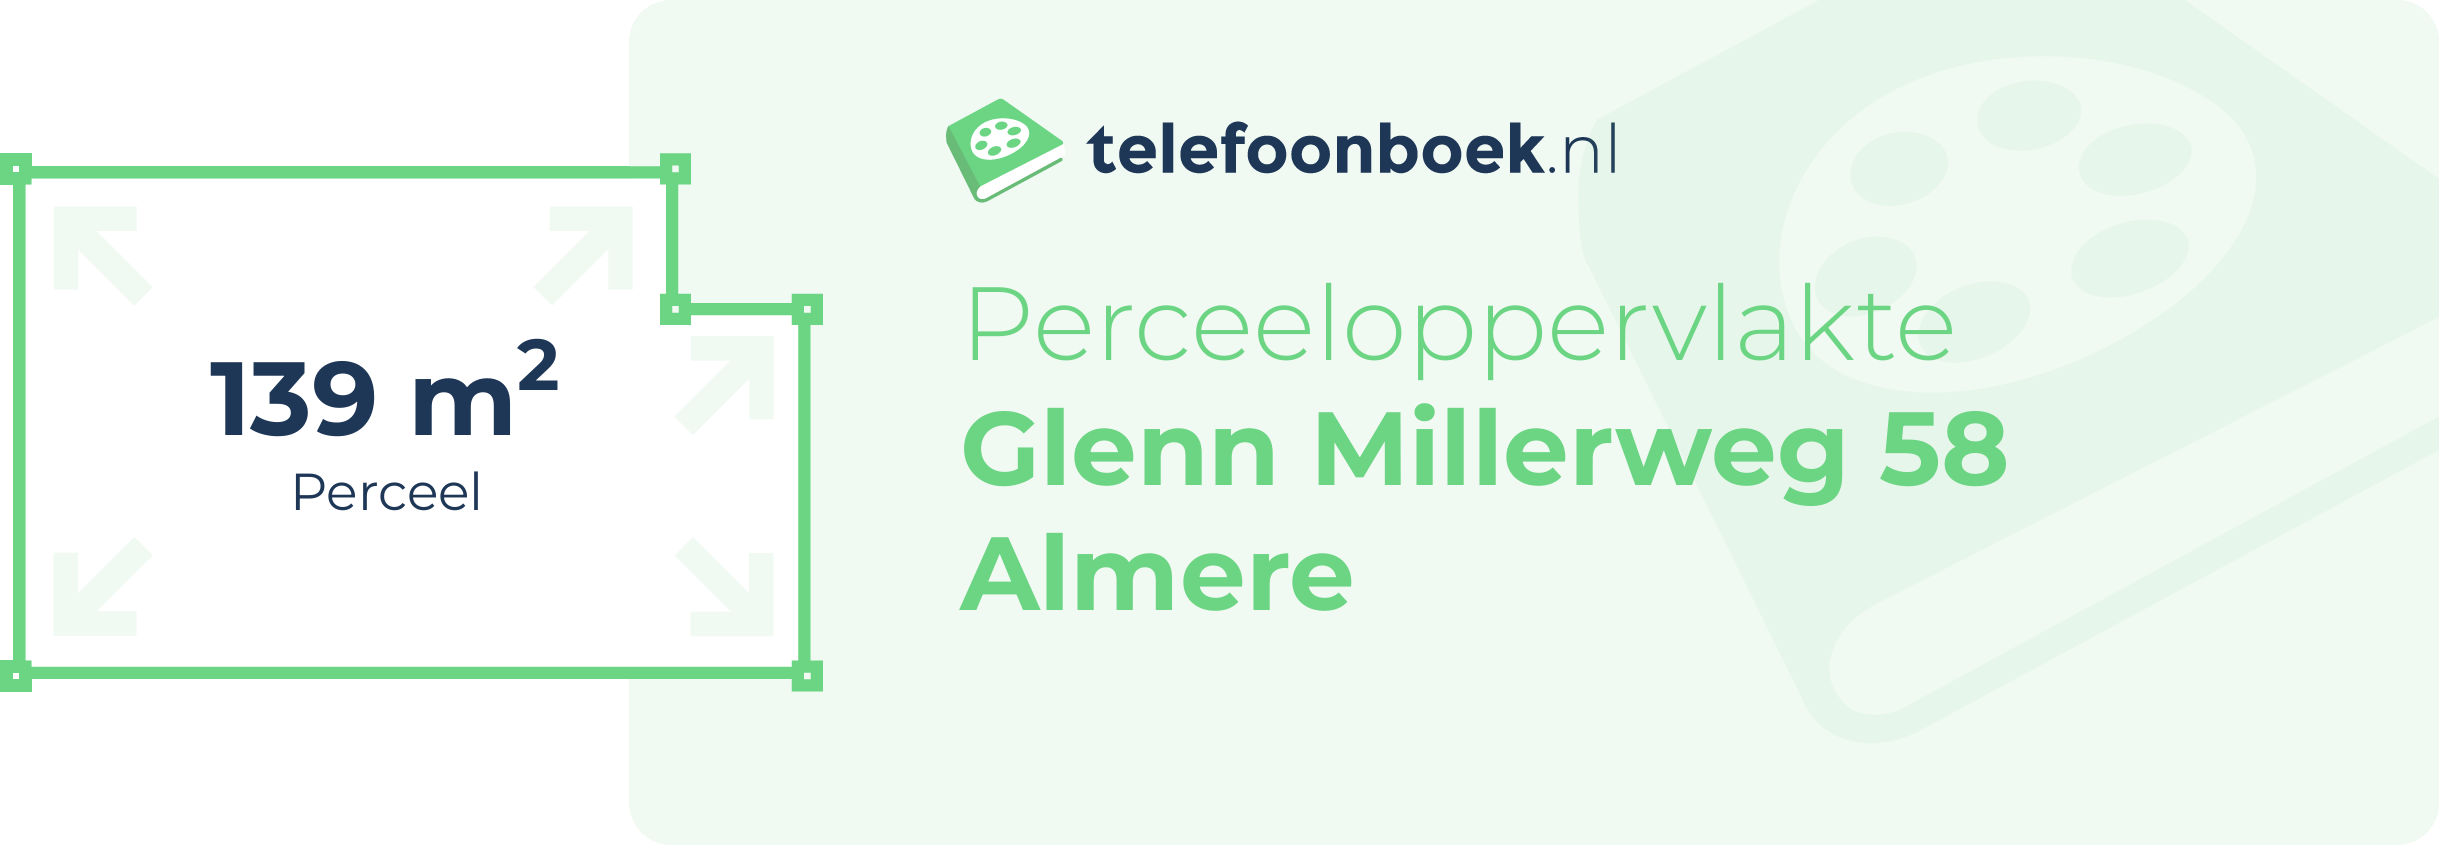 Perceeloppervlakte Glenn Millerweg 58 Almere